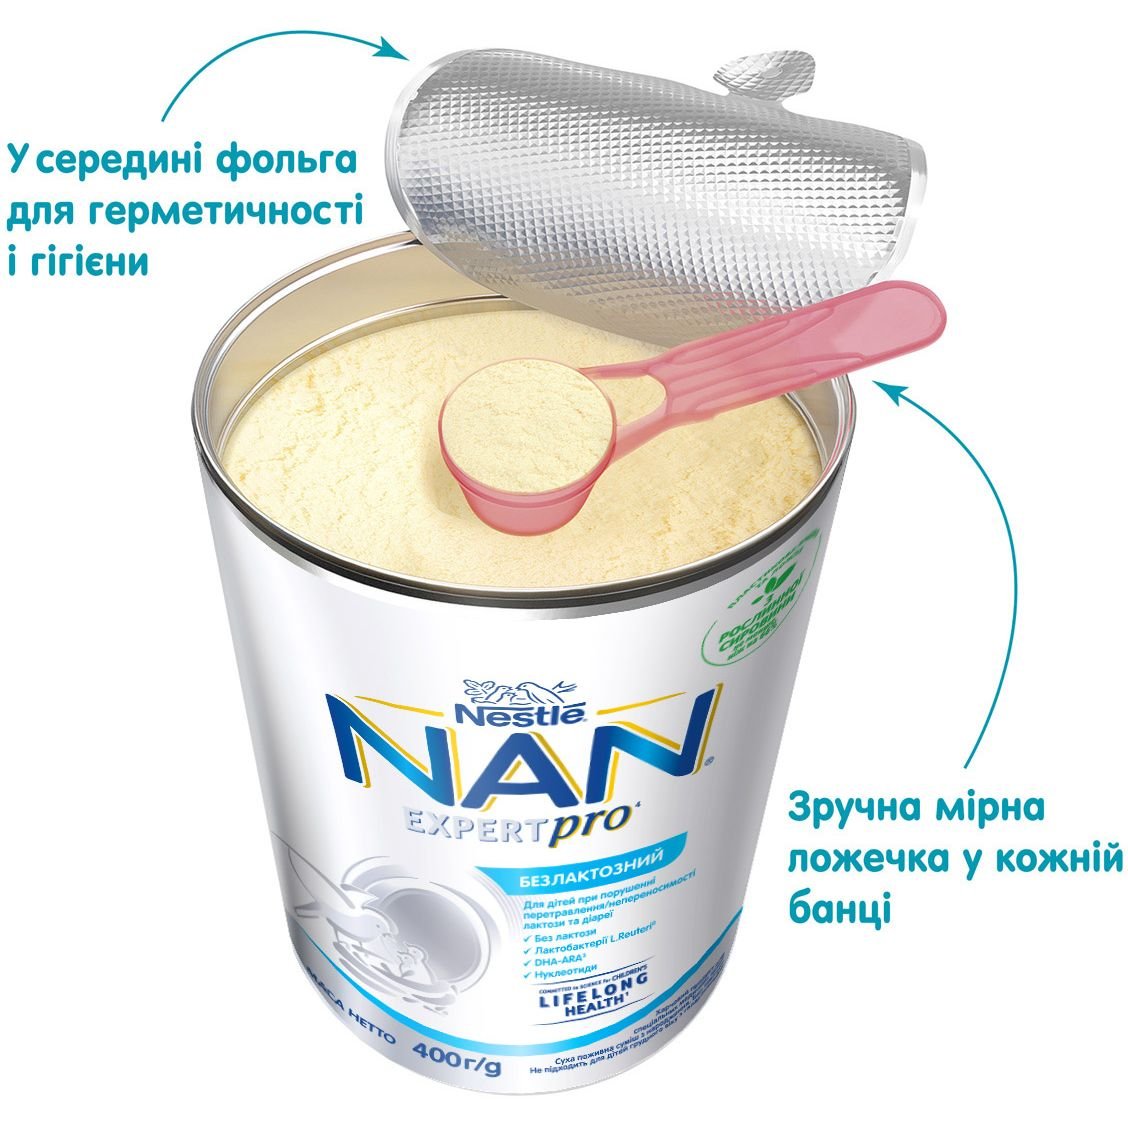 Сухая молочная смесь NAN Безлактозный, 400 г - фото 5